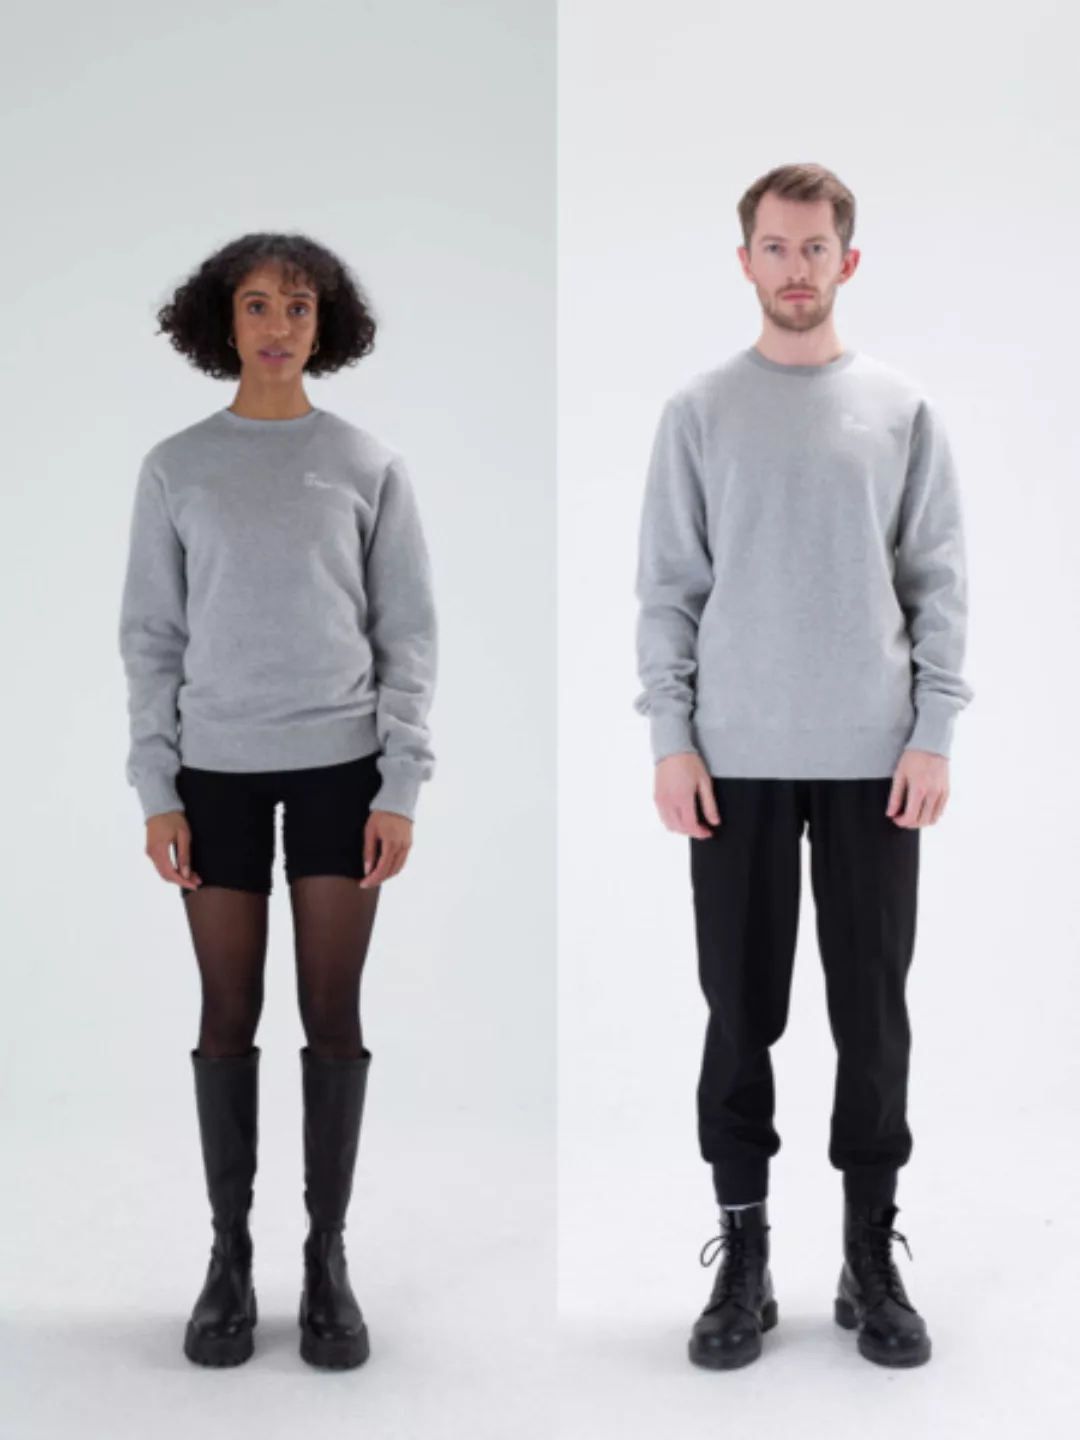 Unlearn Sweater // Unisex günstig online kaufen